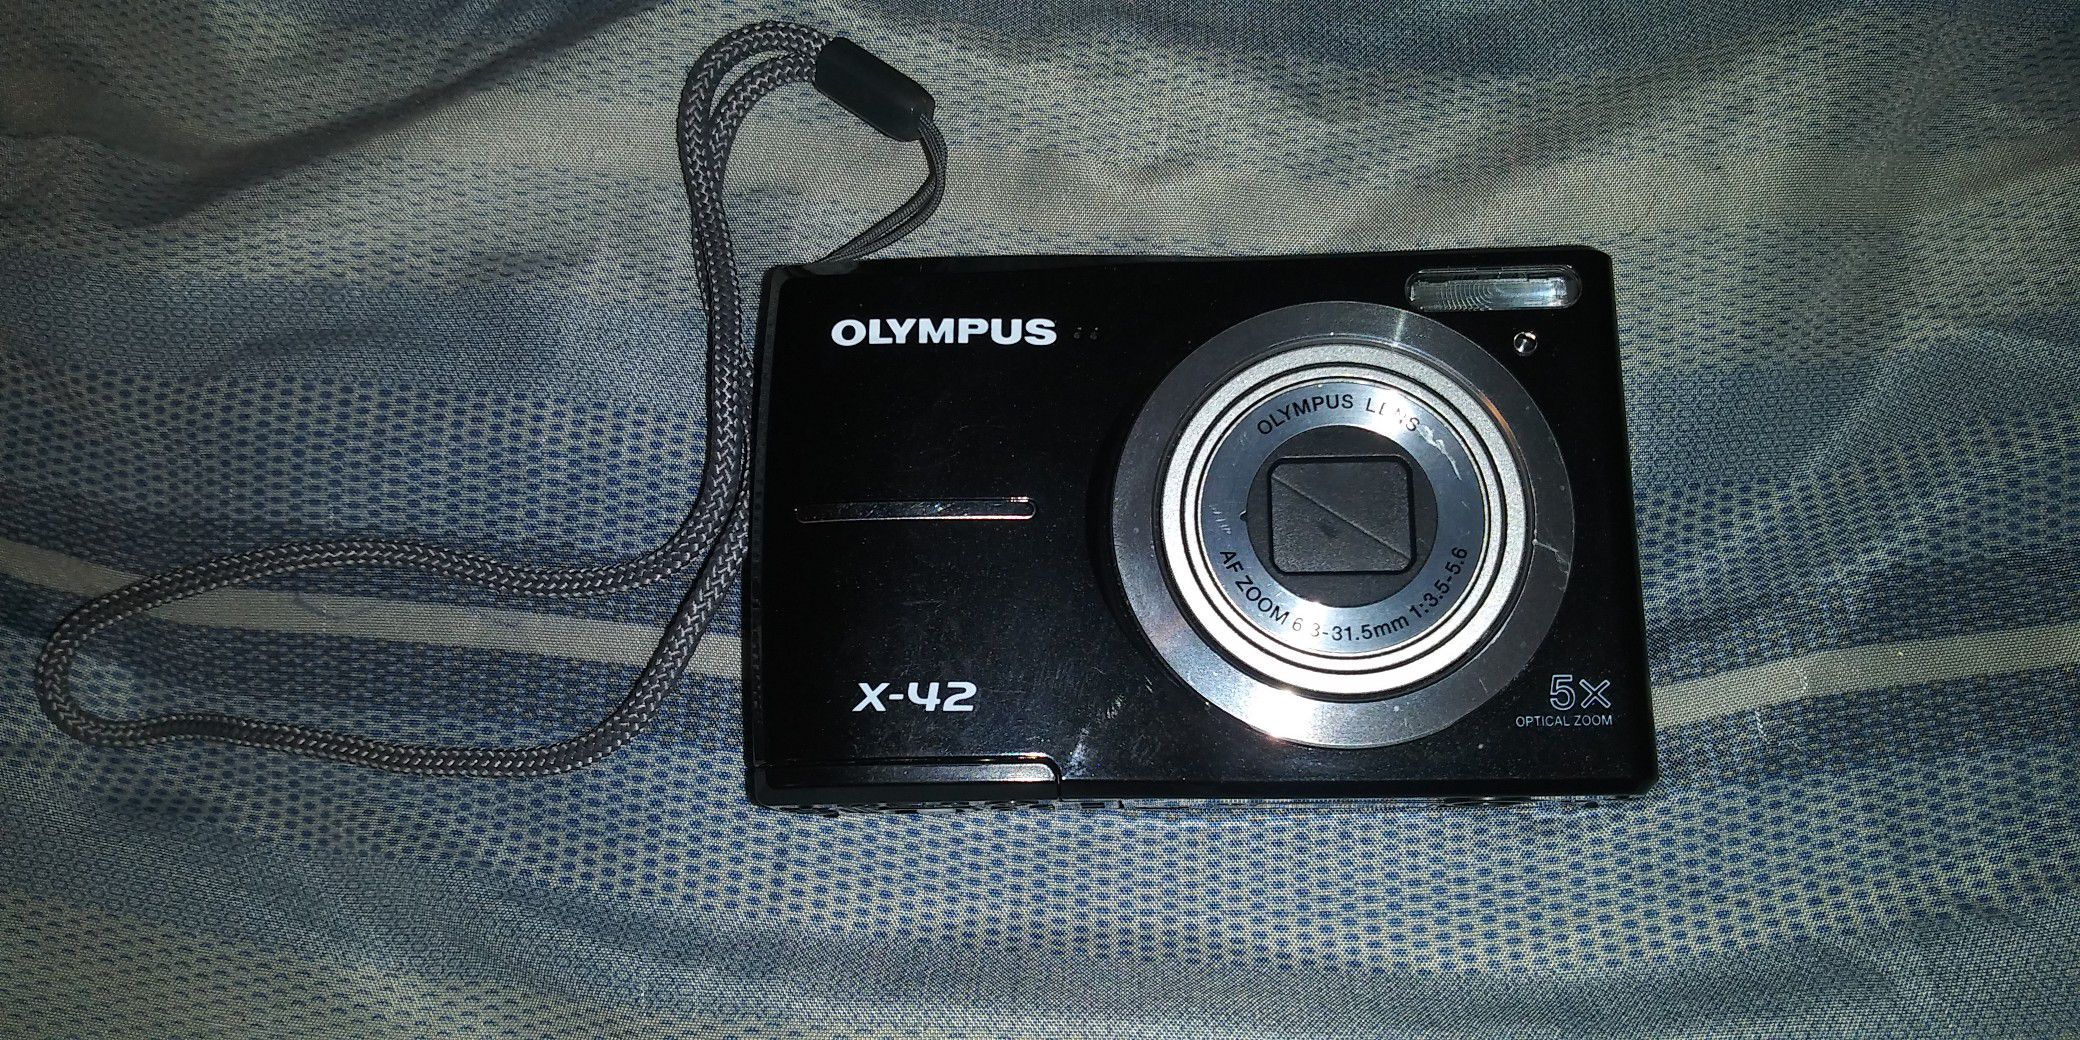 Olympus x-42 digital camera